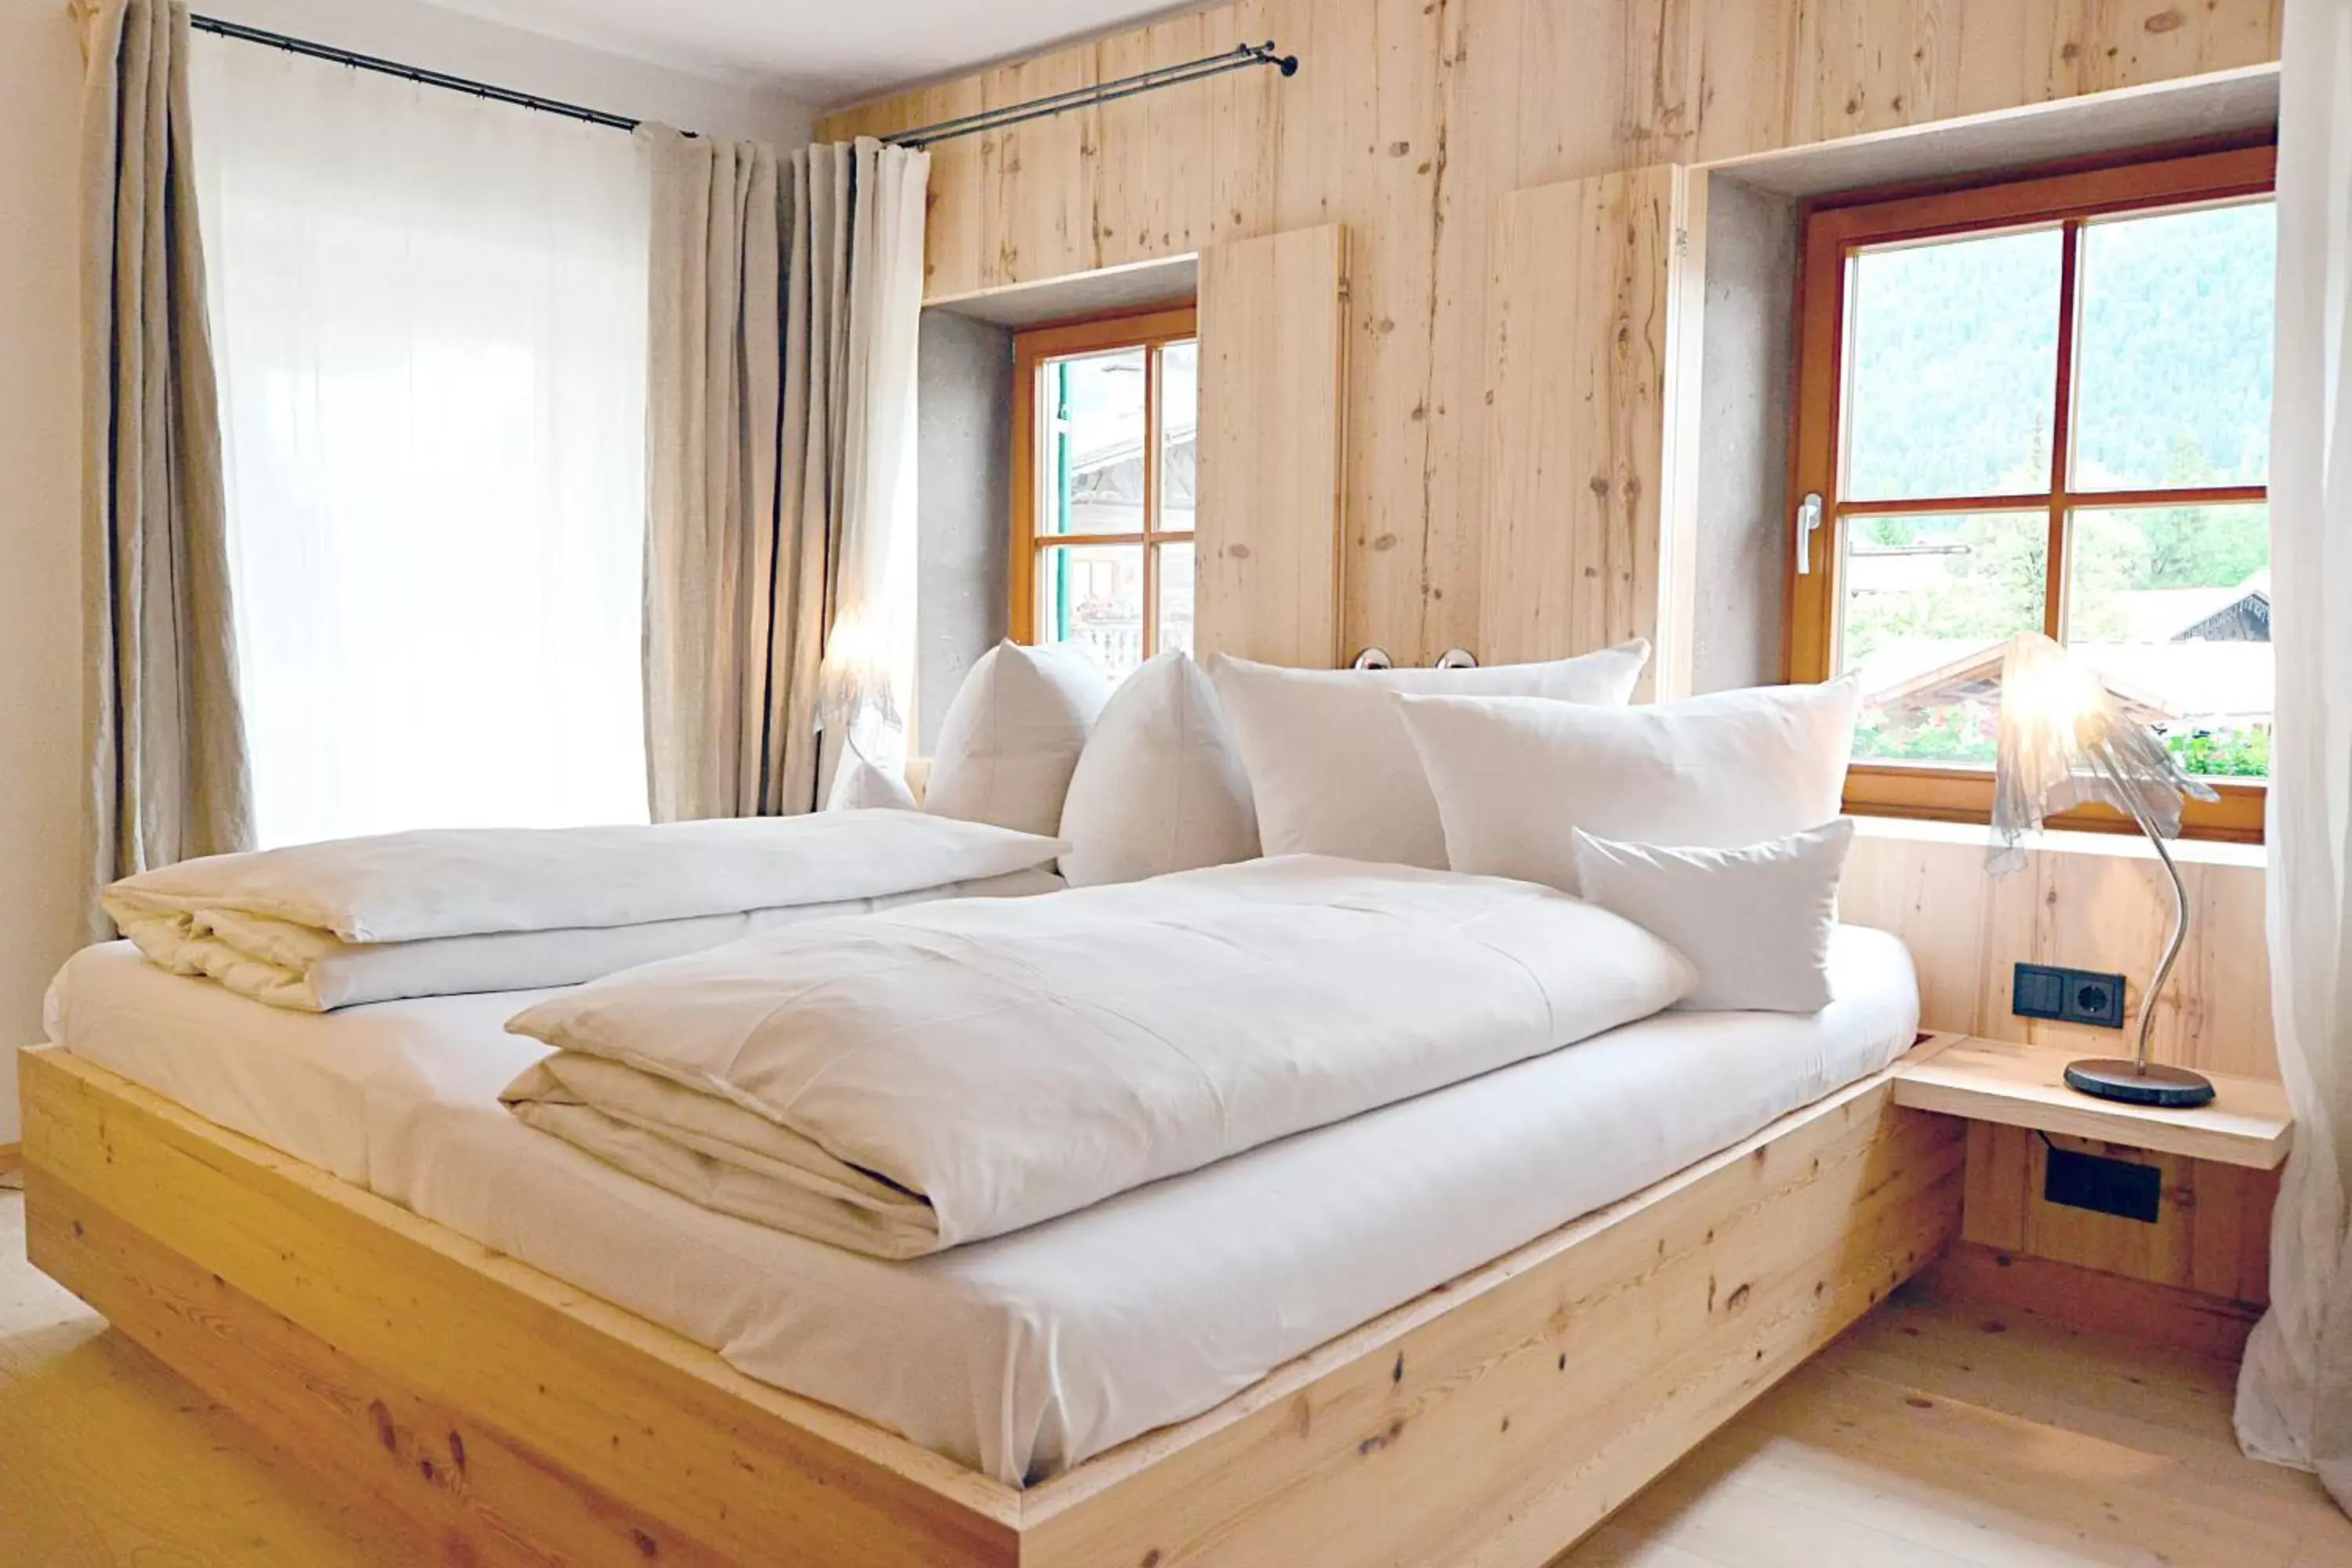 Suite-Annex in Hotel Staudacherhof History & Lifestyle